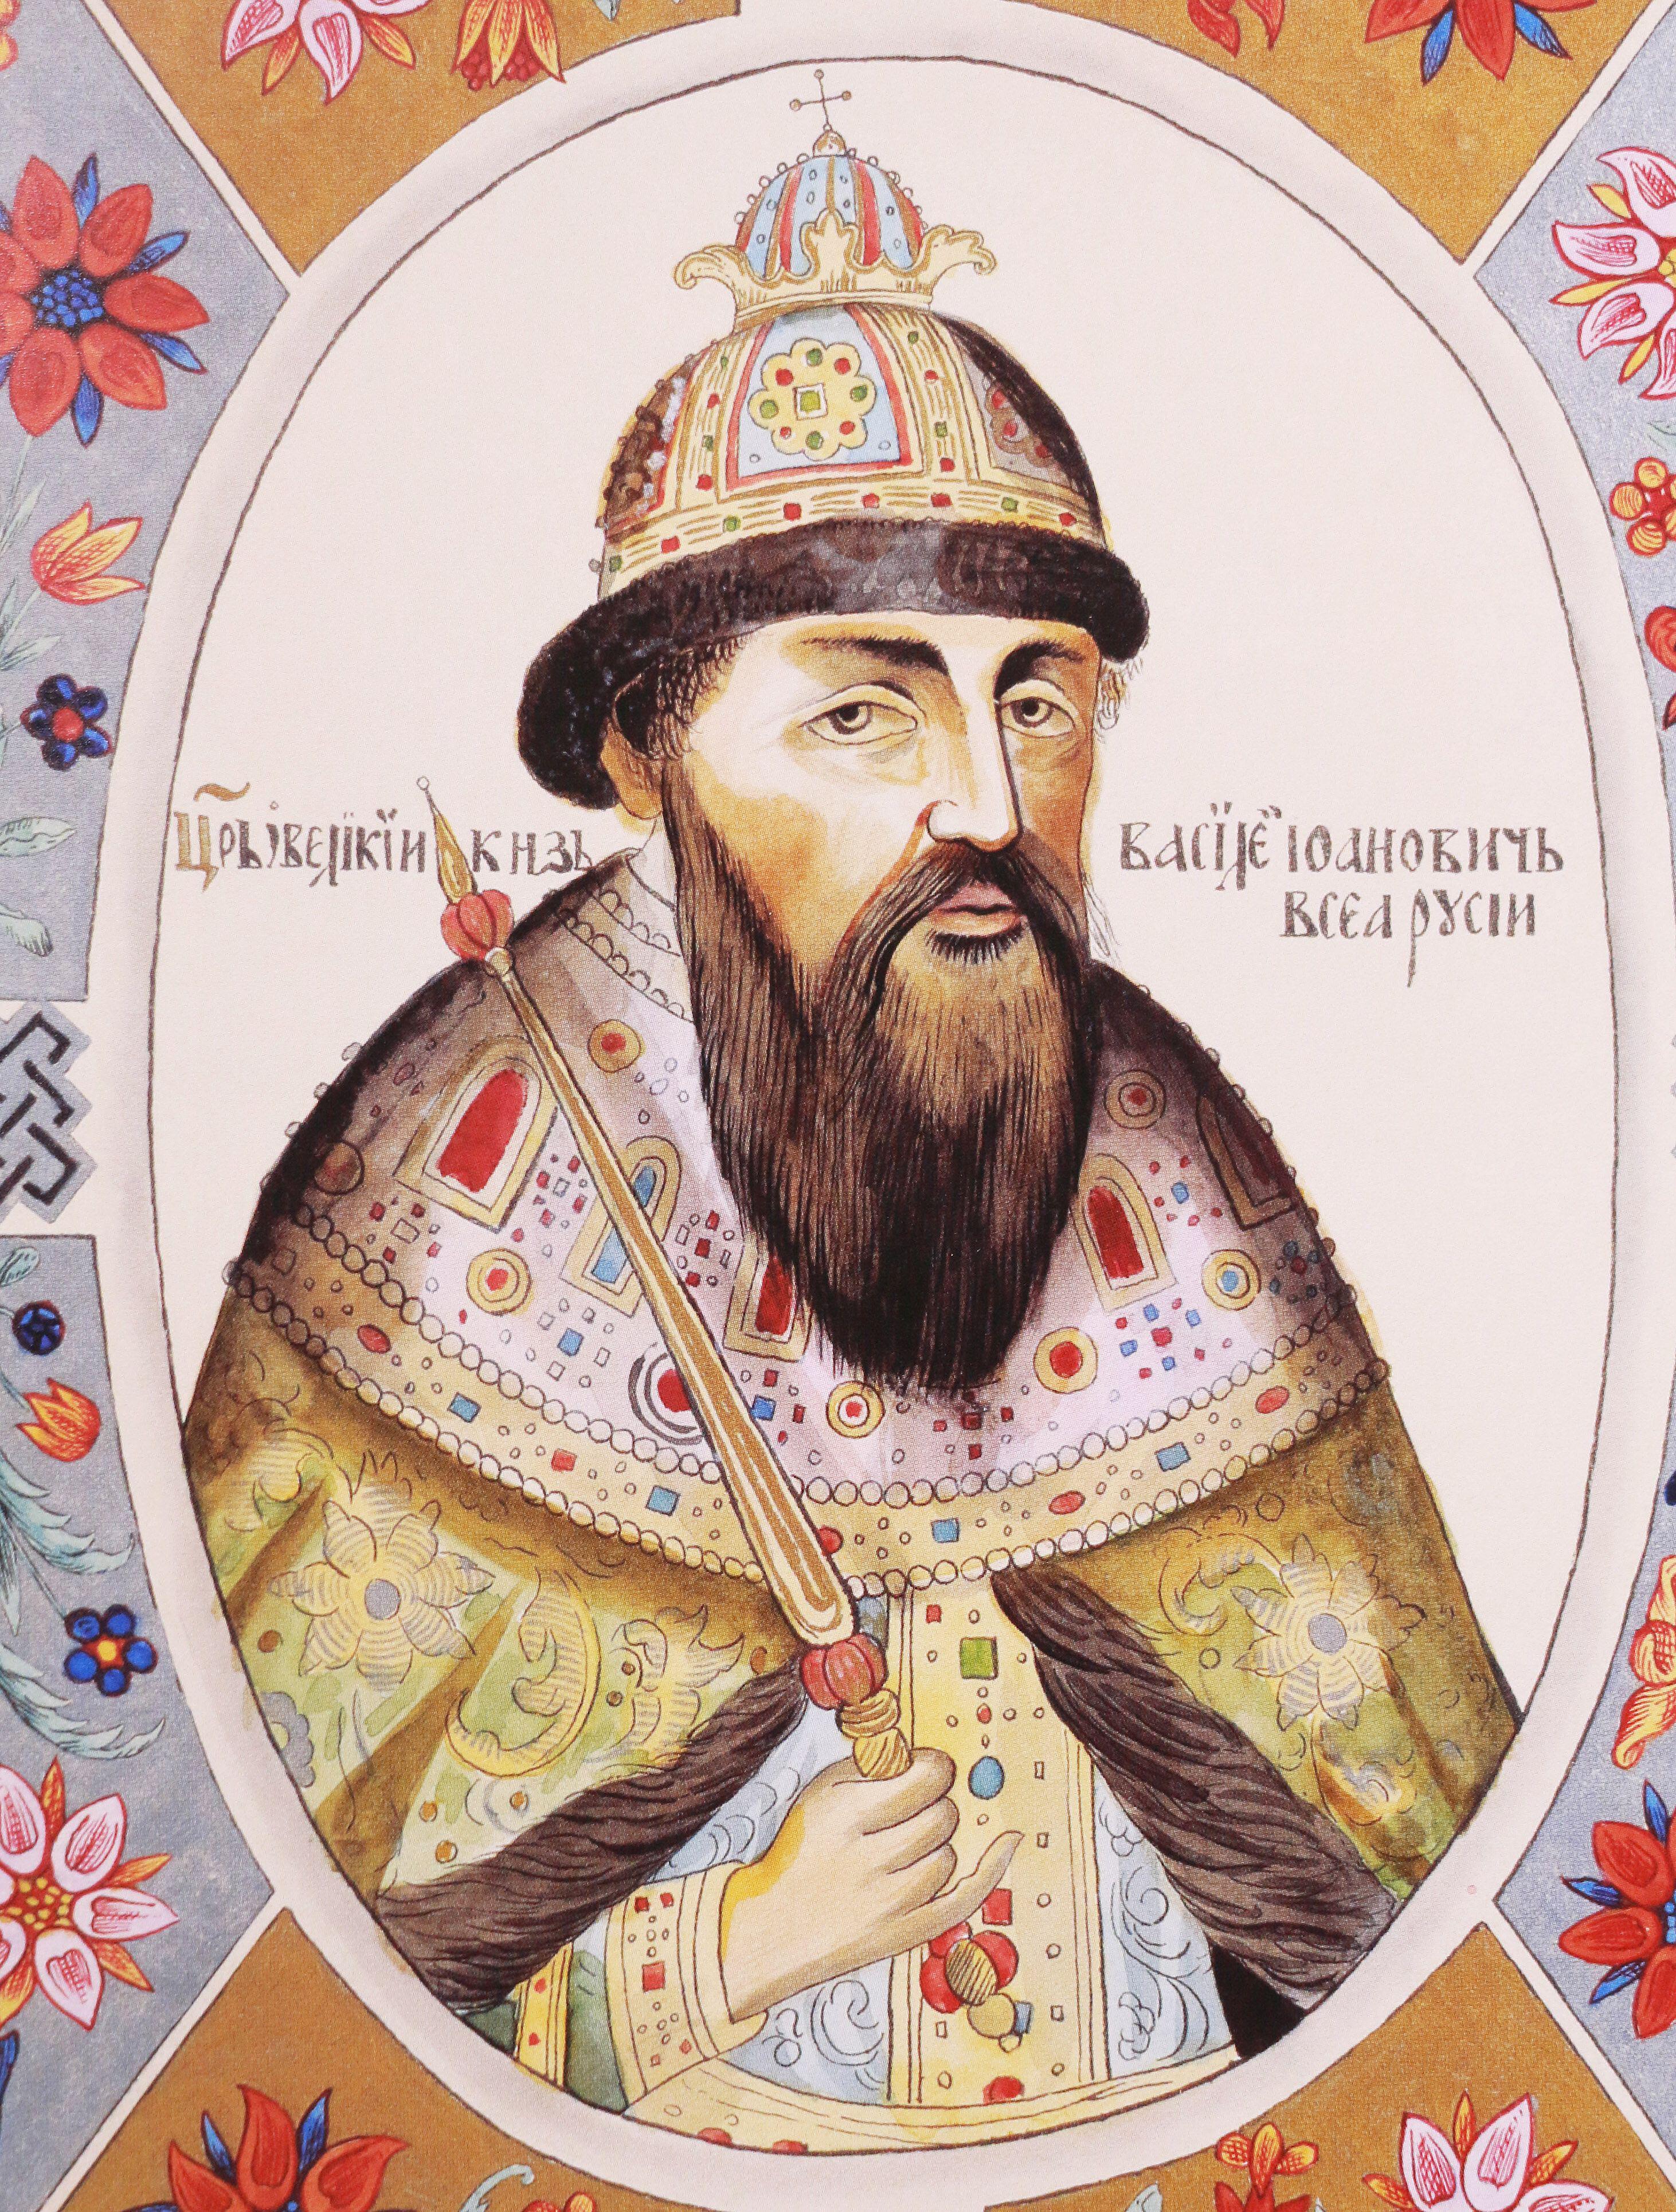 Василий IV Иванович Шуйский, царь Московский и всея Руси с 1606 по 1610 год